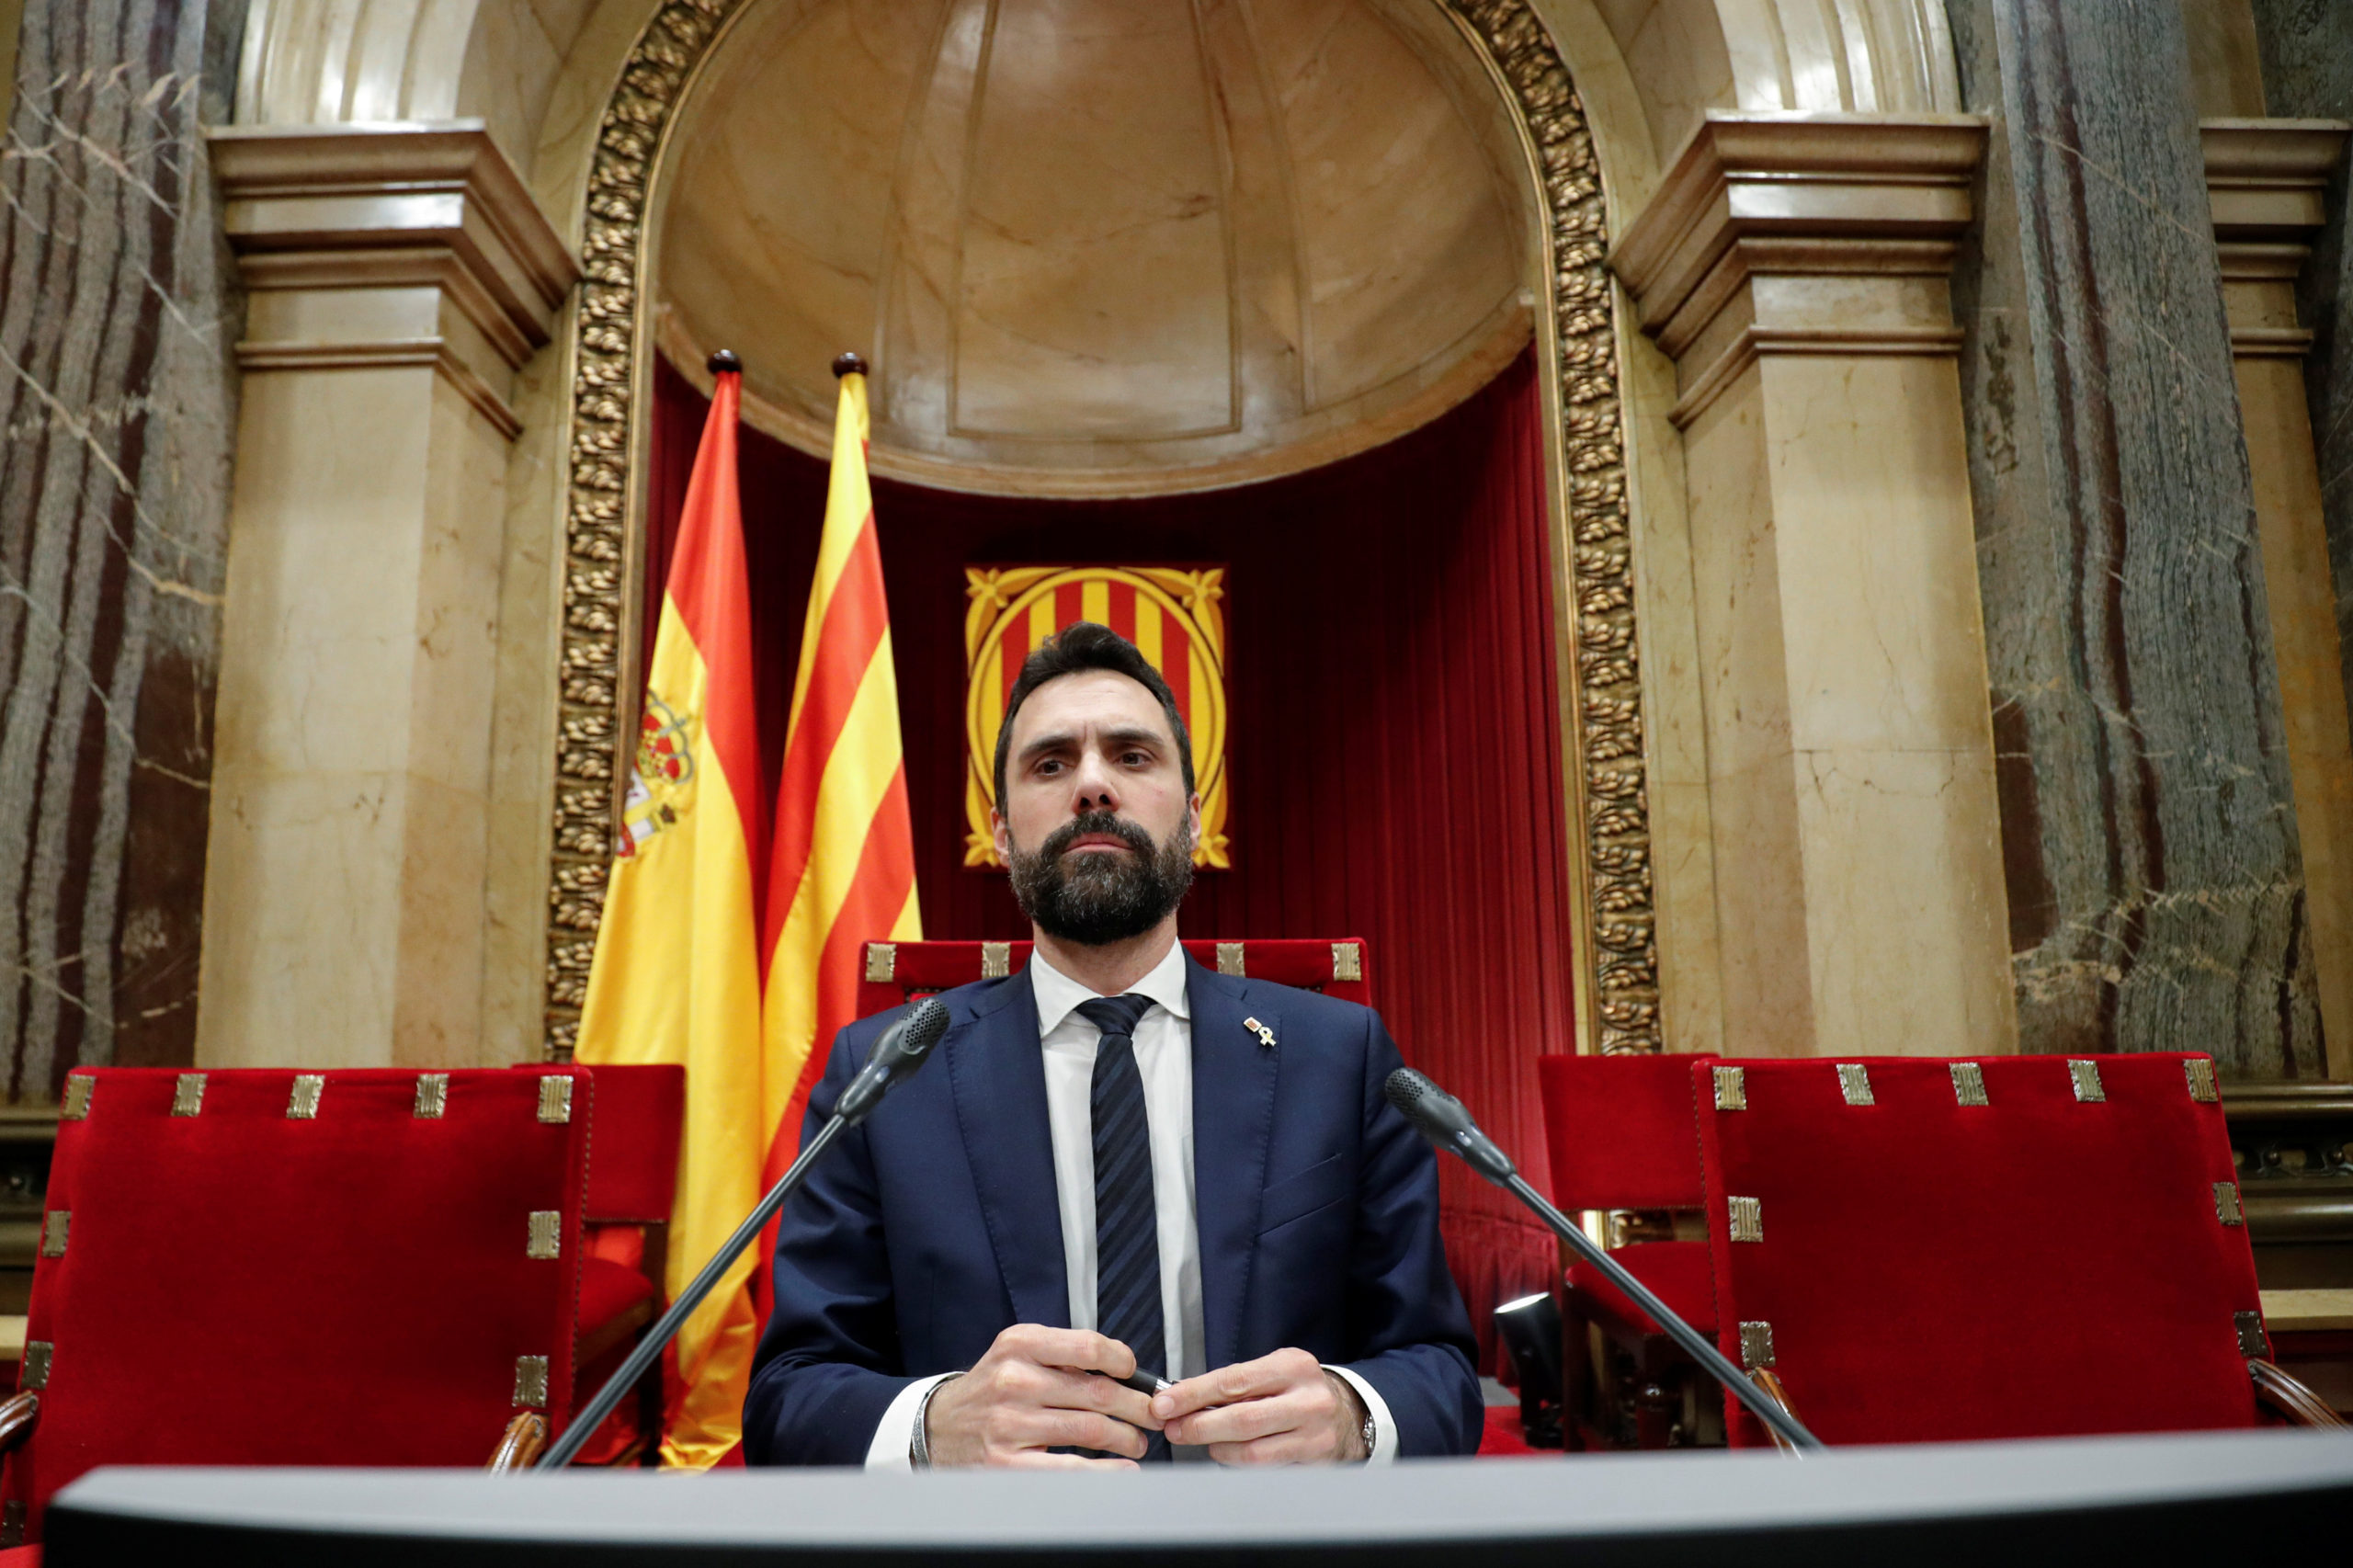 Le président du Parlement de Catalogne pense avoir été sur écoute